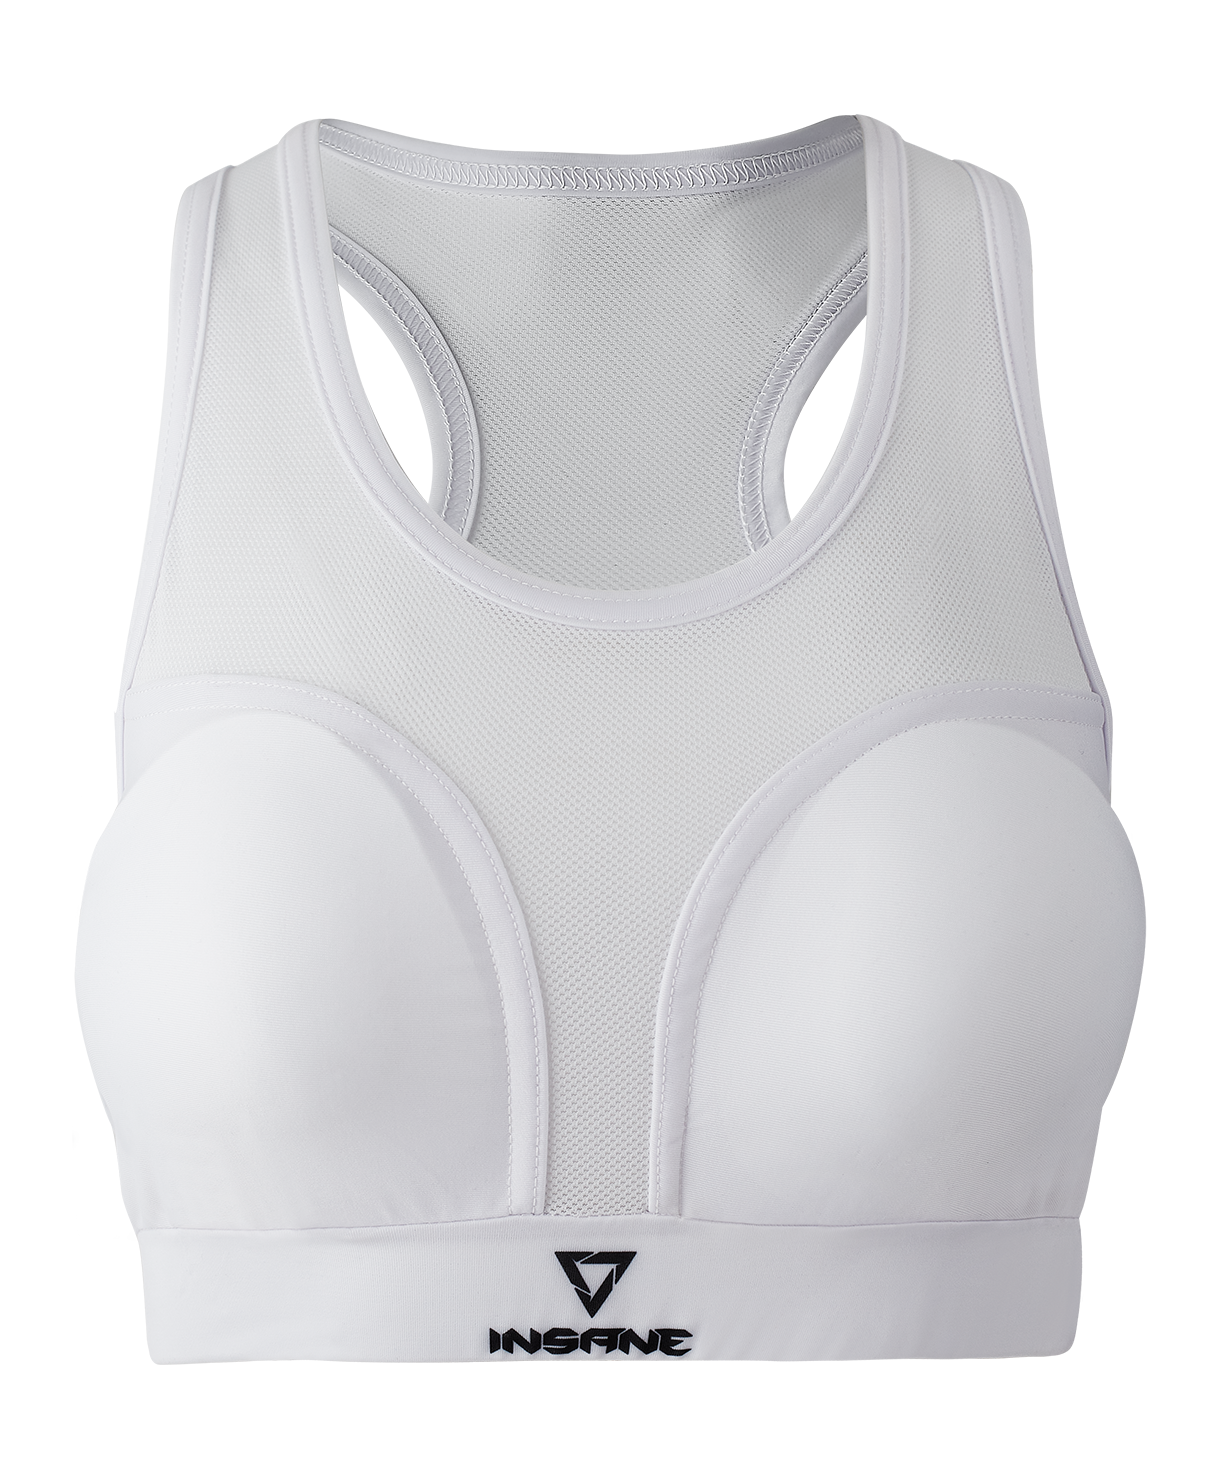 Защита груди Insane Protec W, белый, женский размер S